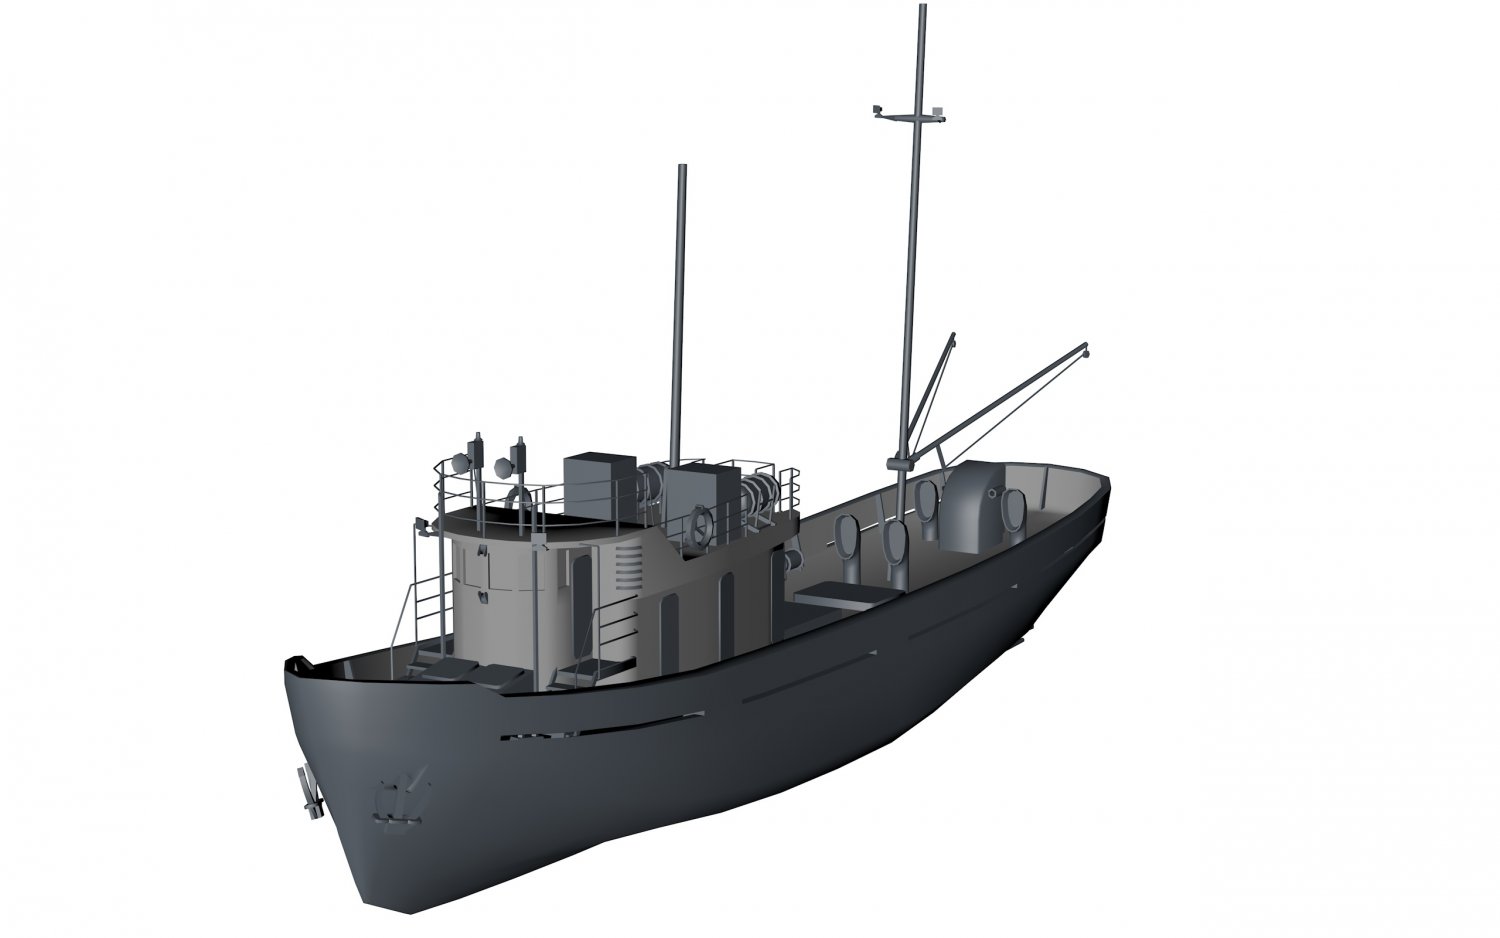 Boat Free 3d Model In Commercial 3dexport